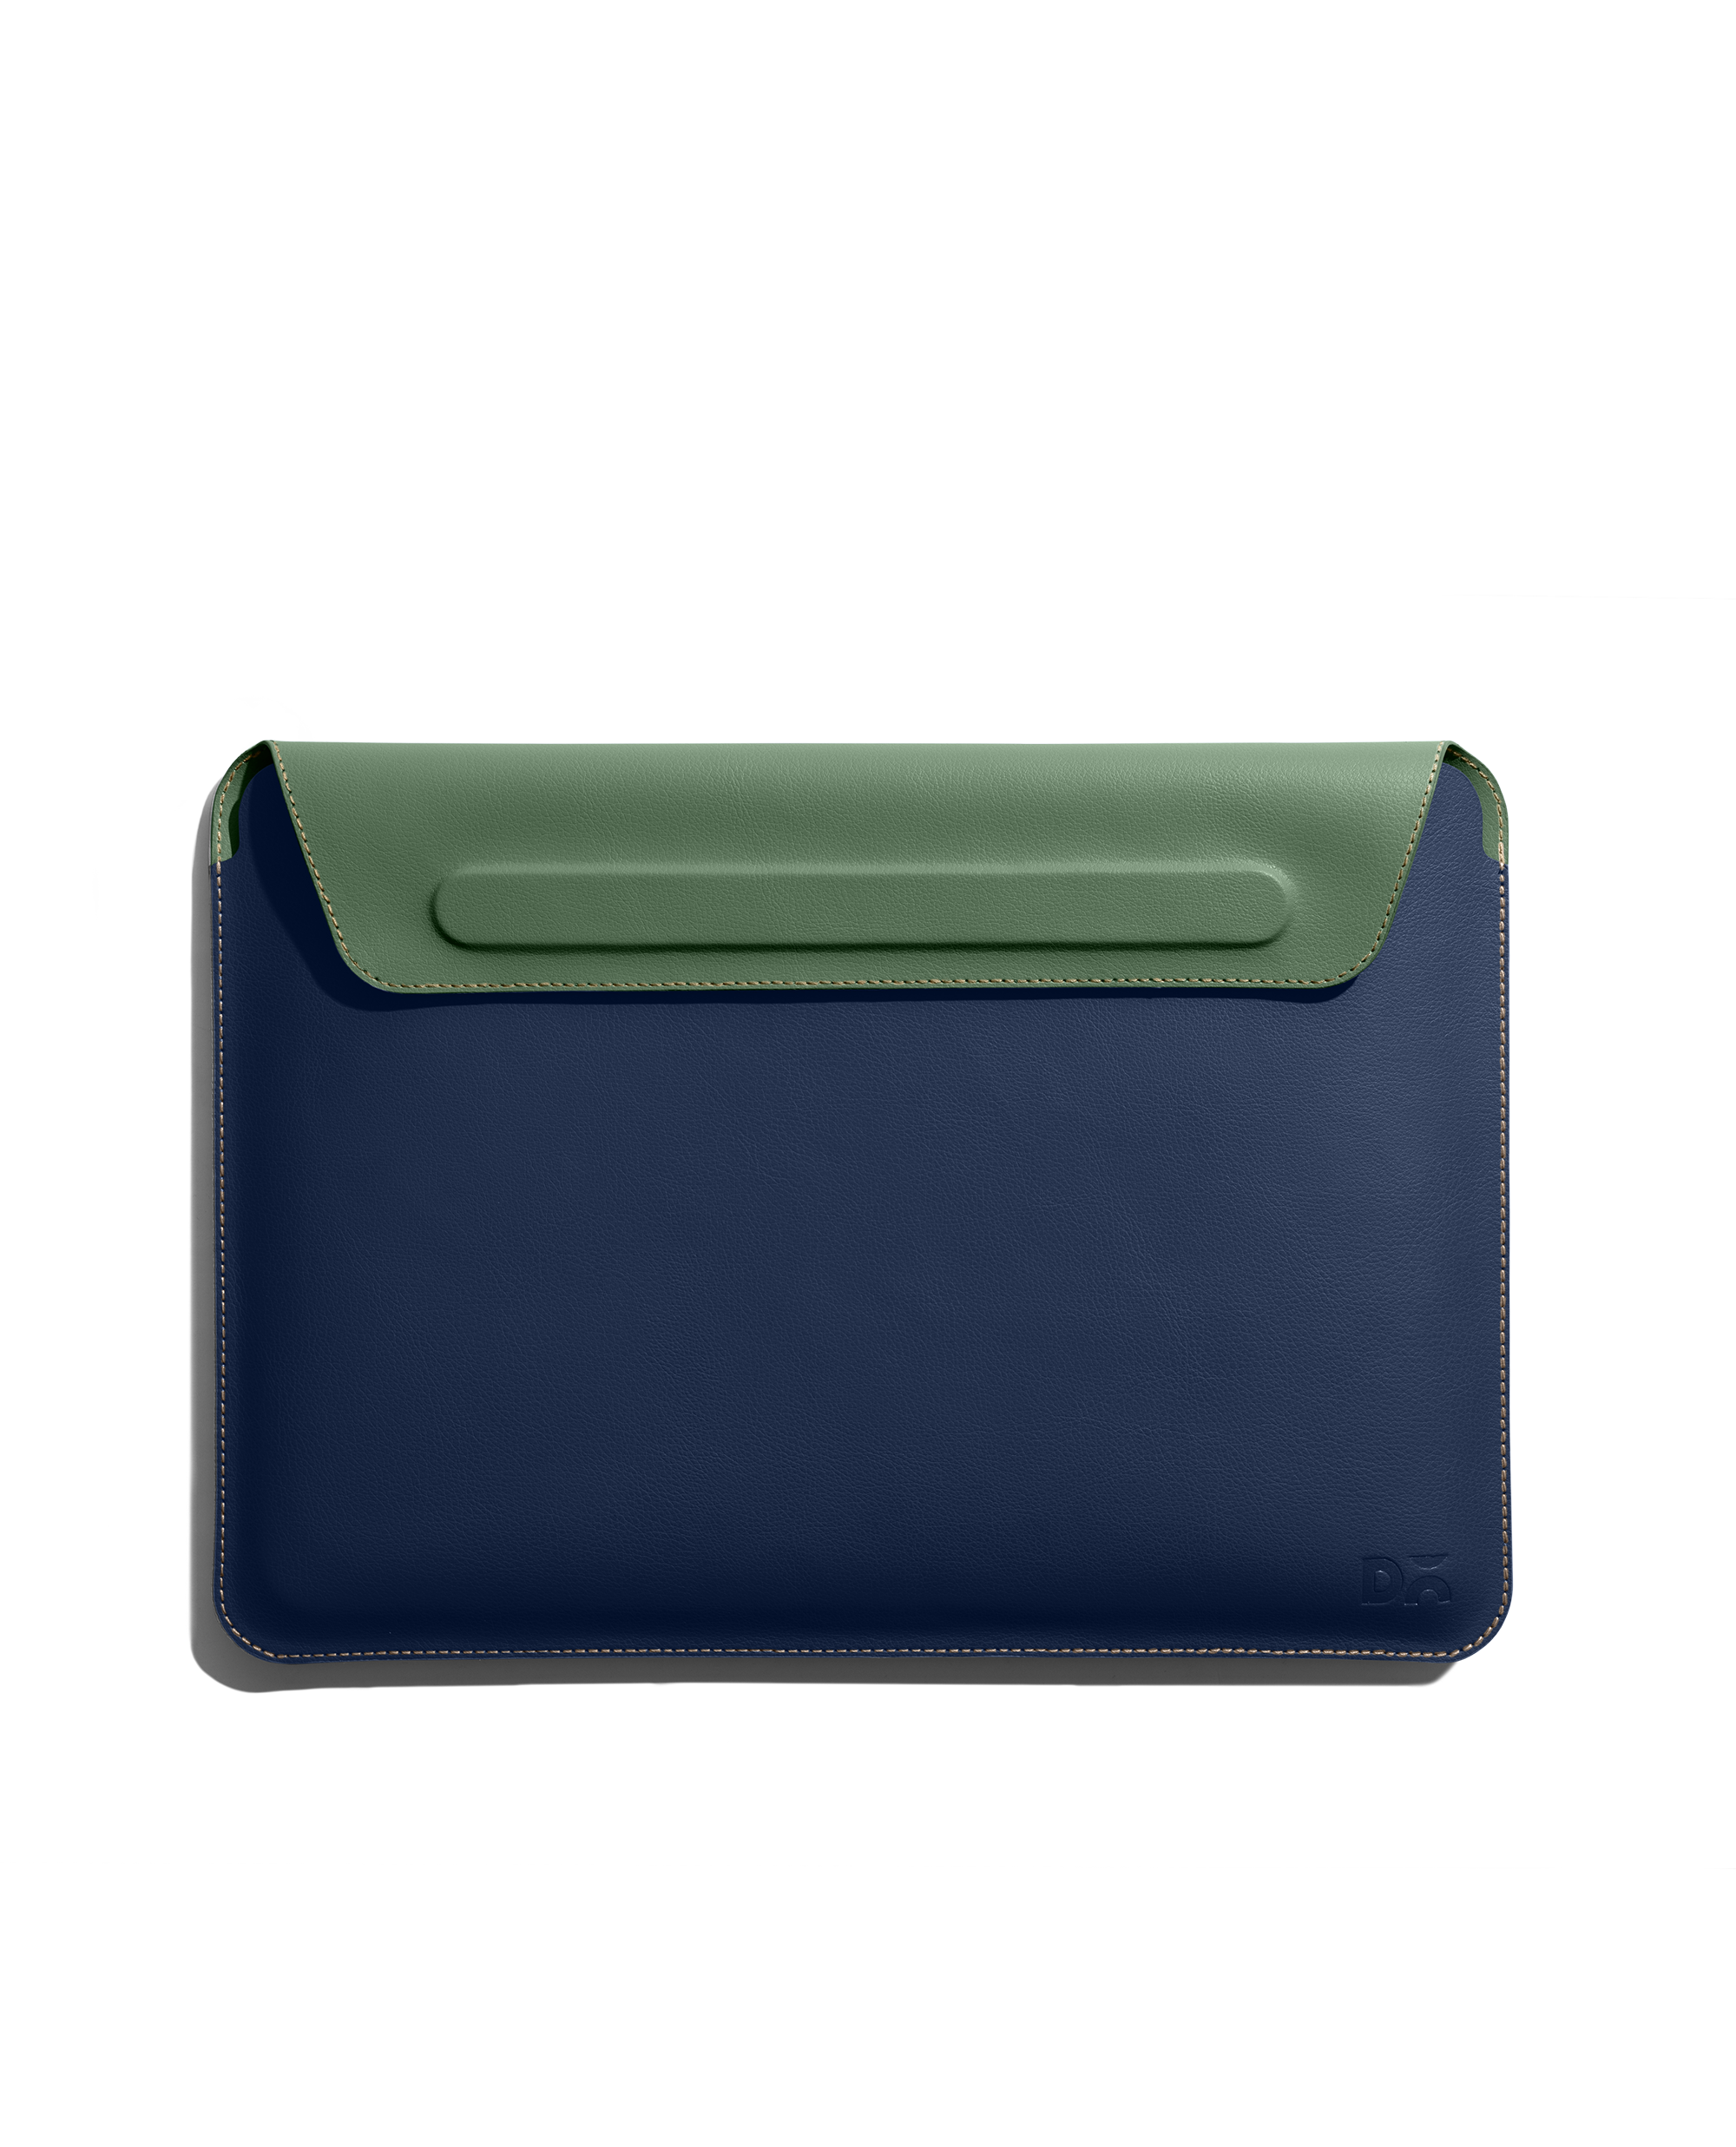 Buy Blue Printed Laptop Bag Online - Aarke India Store View